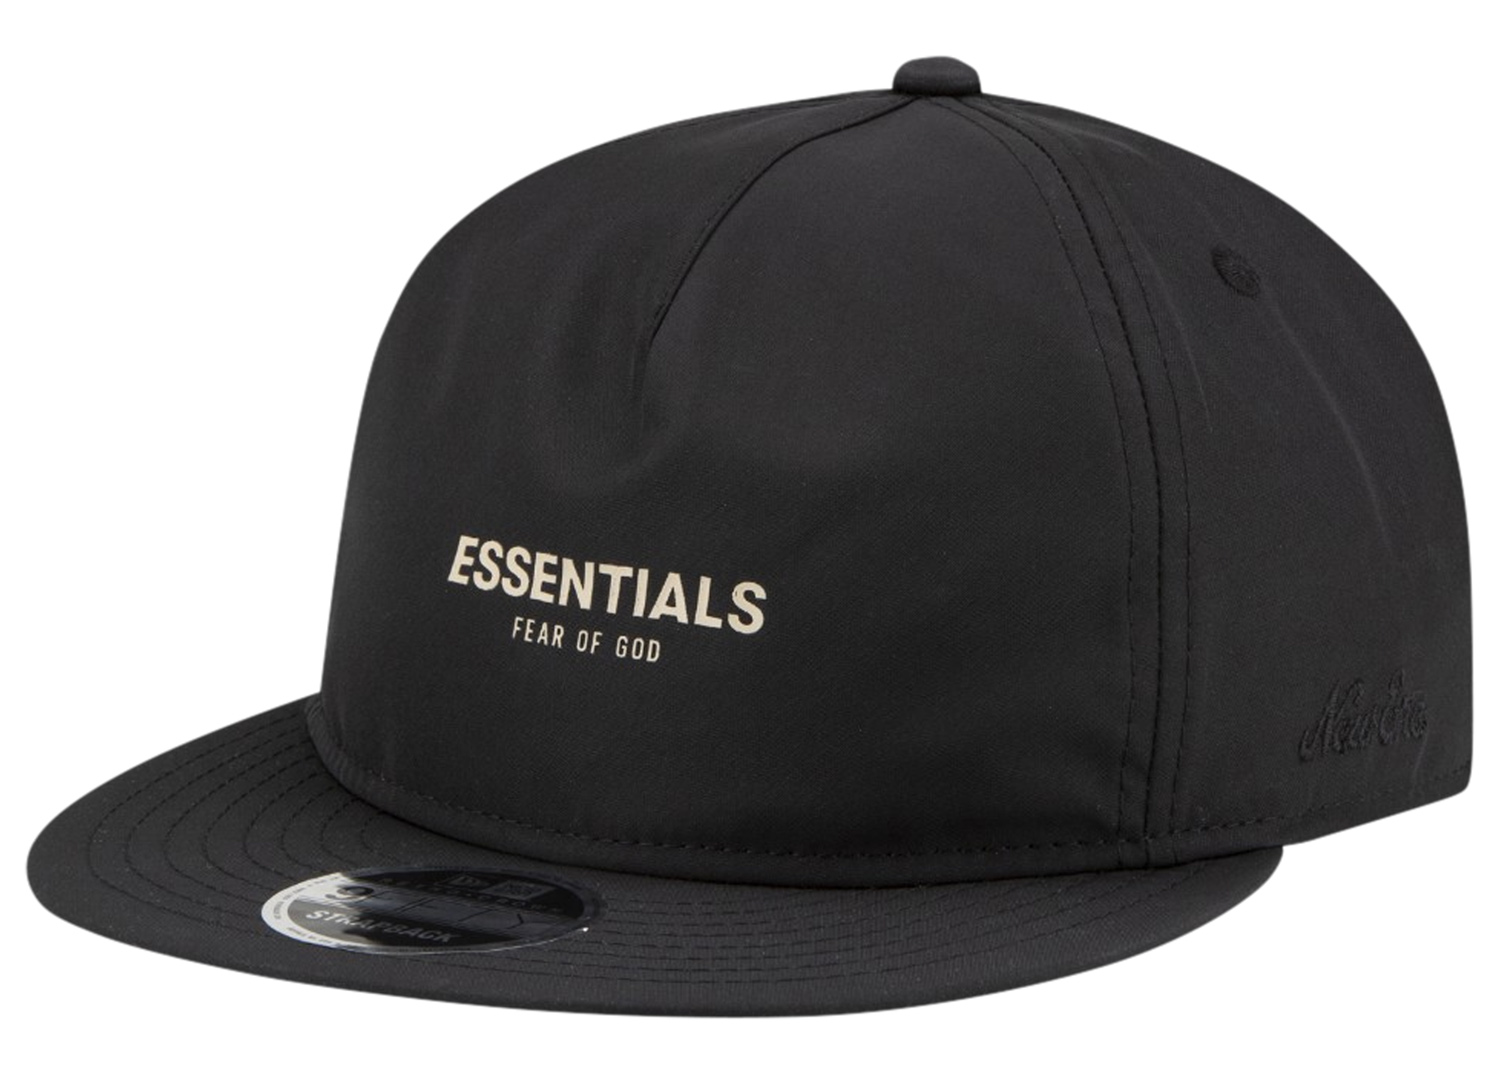 fear-of-god-essentials-new-era-black-hat